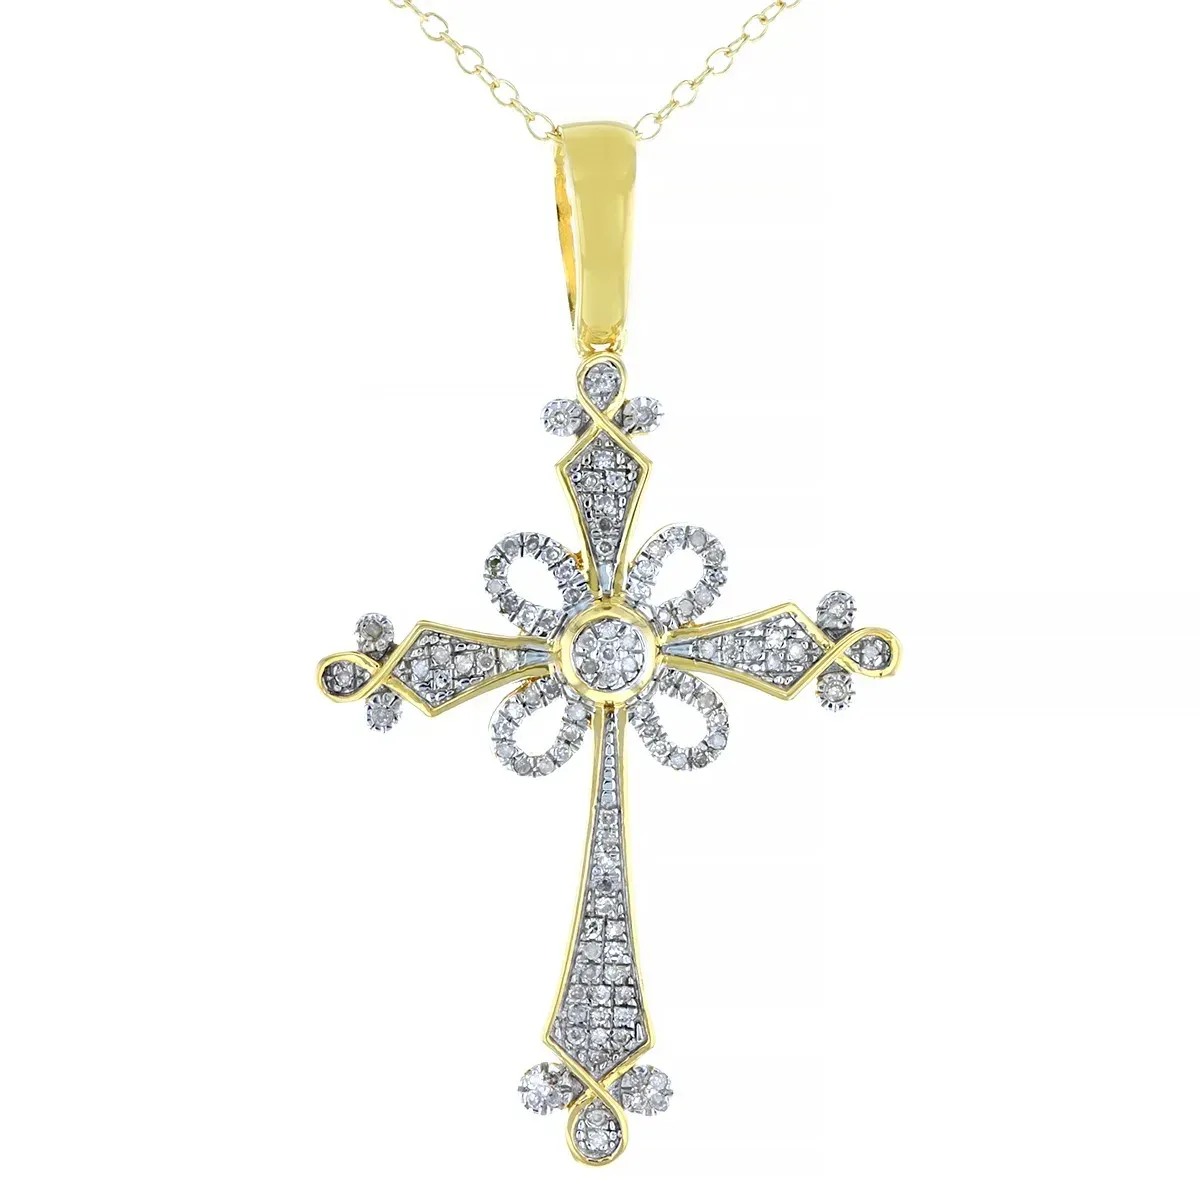 Devoción dorada: Diamante blanco, de 14 quilates oro amarillo, colgante de cruz de plata de ley 925, un símbolo de fe y belleza atemporal